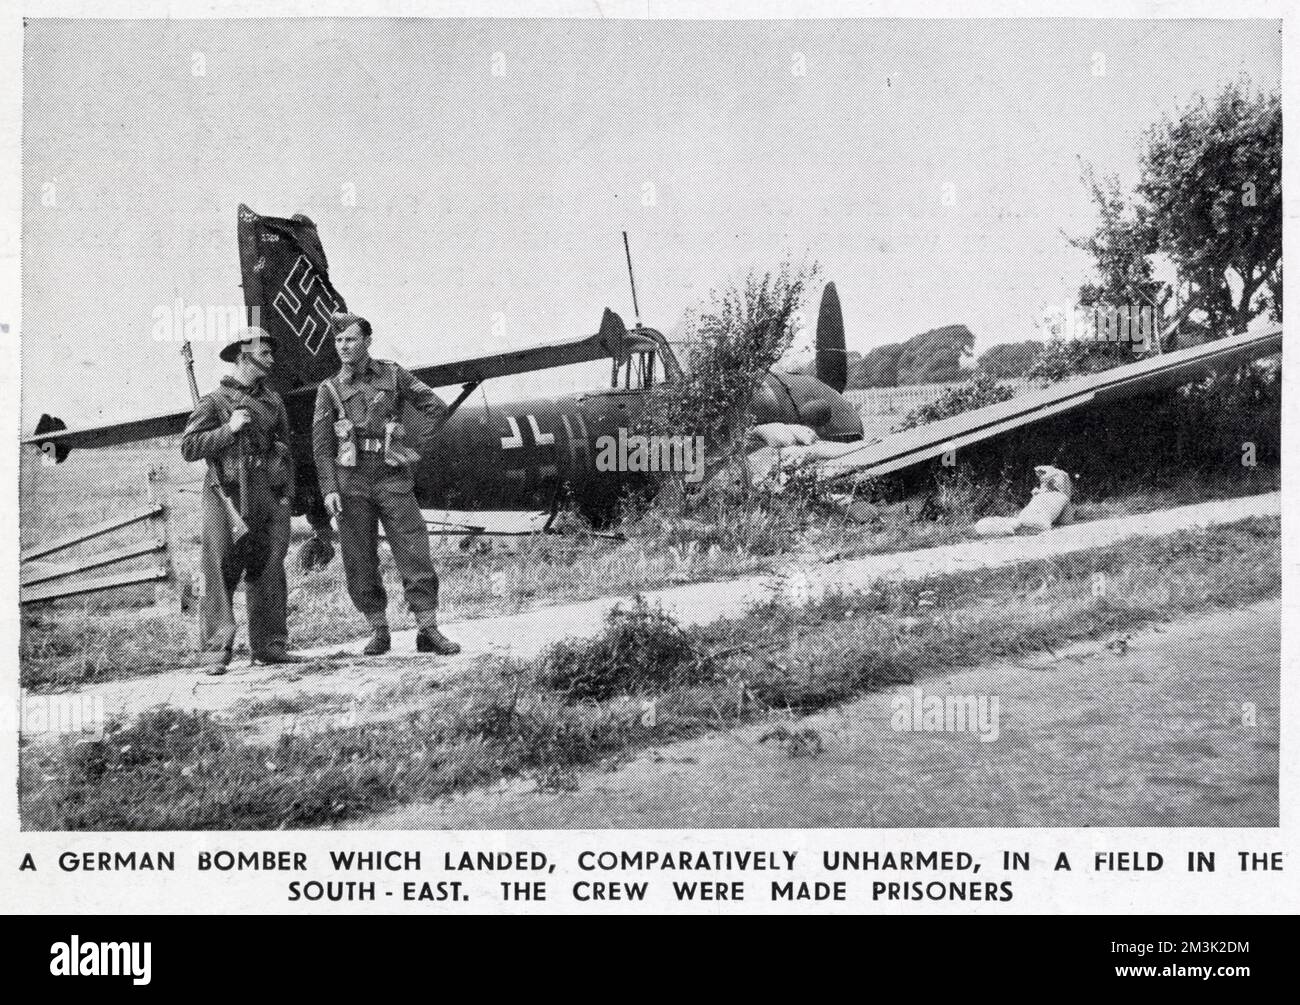 Un bombardiere tedesco Junkers Ju-87 si è schiantato, conosciuto anche come 'Stuka', da qualche parte nel sud-est dell'Inghilterra durante l'estate del 1940. Due soldati britannici sono visti a guardia dell'aereo schiantato. Foto Stock